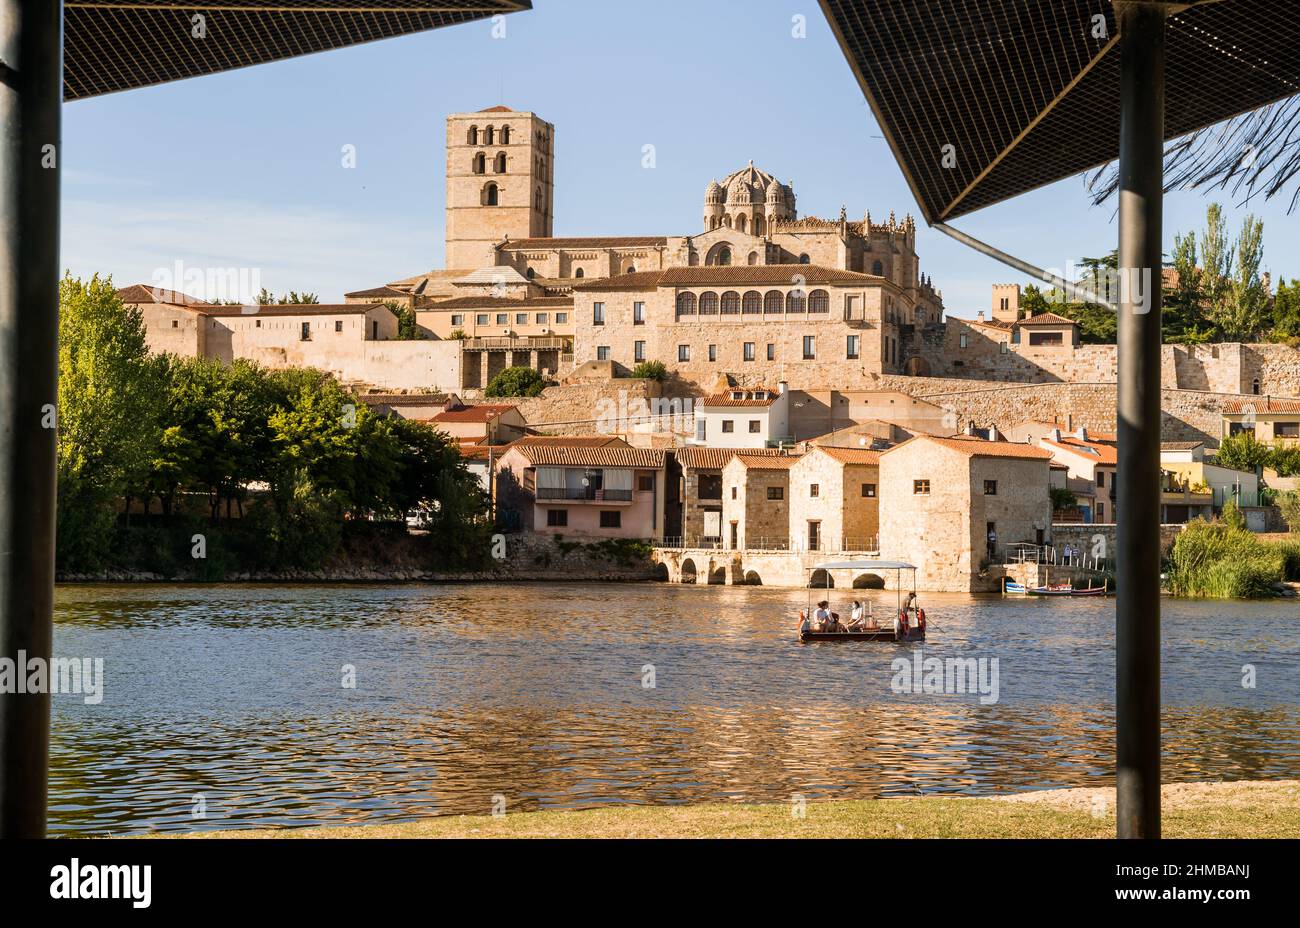 Vue sur la cathédrale avec les moulins et le fleuve Duero où il y a une barge traversant l'eau avec les touristes pendant une journée ensoleillée d'été à Zamora, Banque D'Images